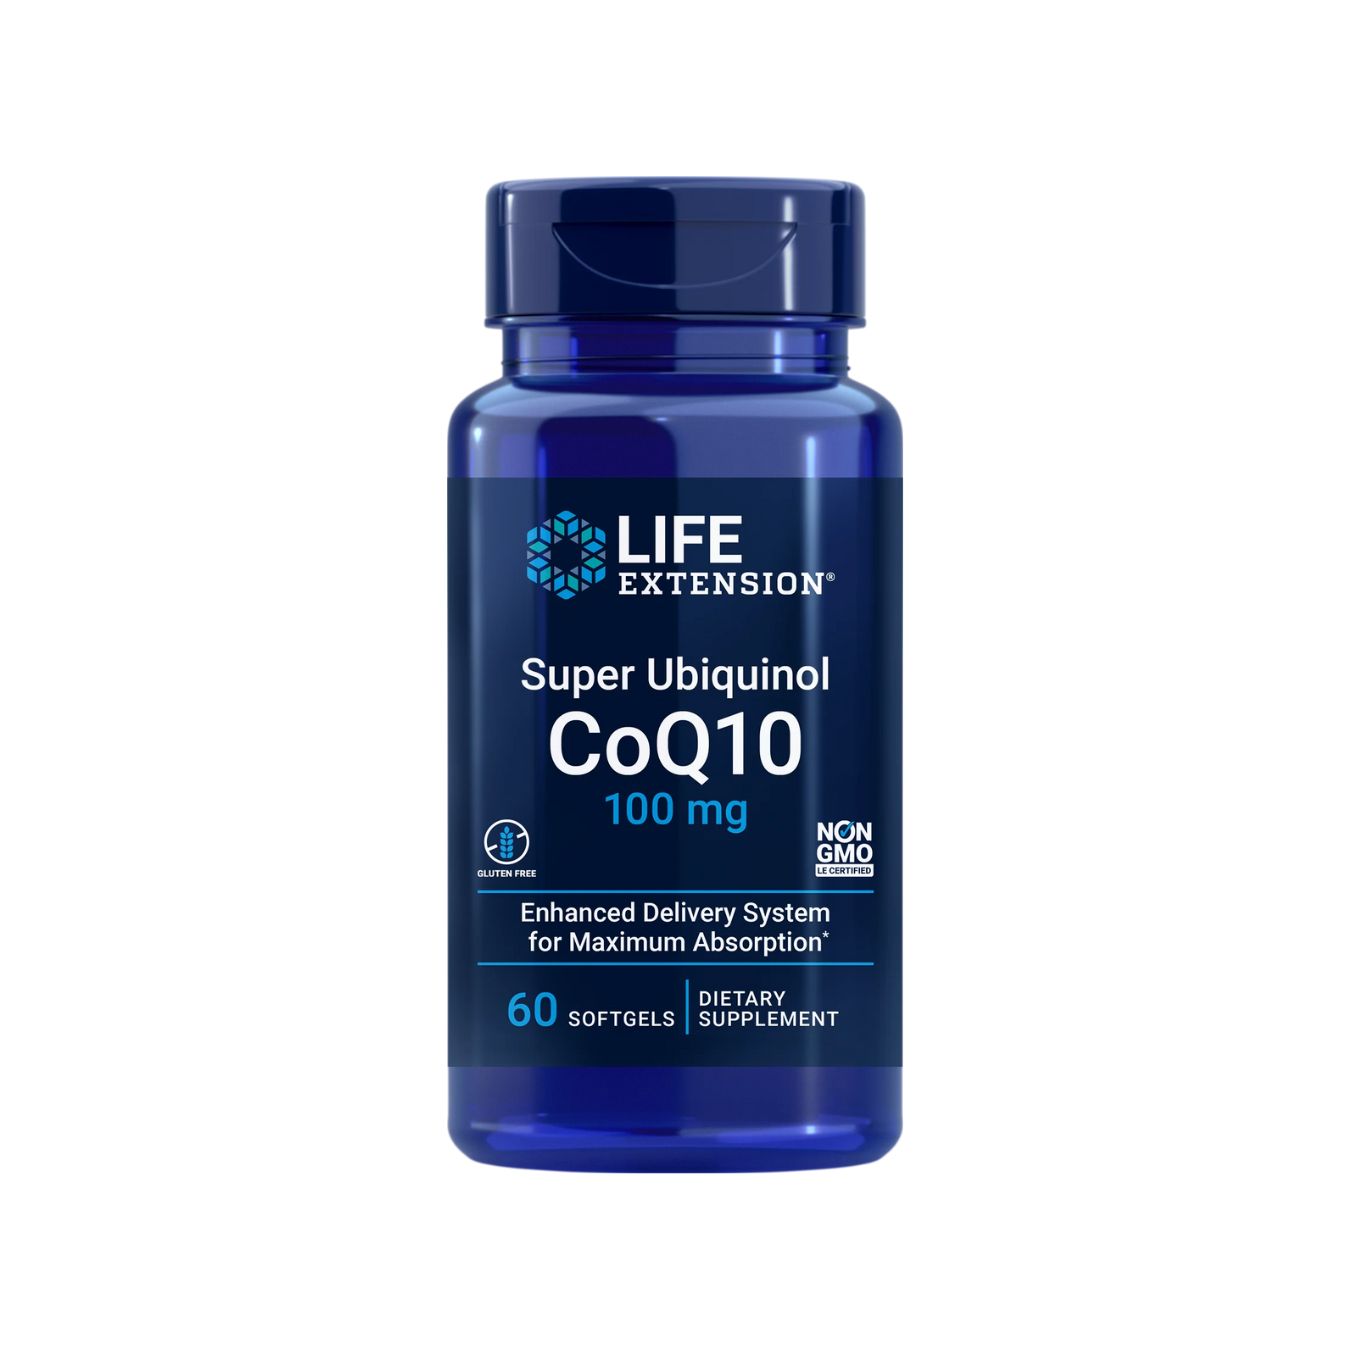 Super Ubiquinol CoQ10 100mg - Life Extension